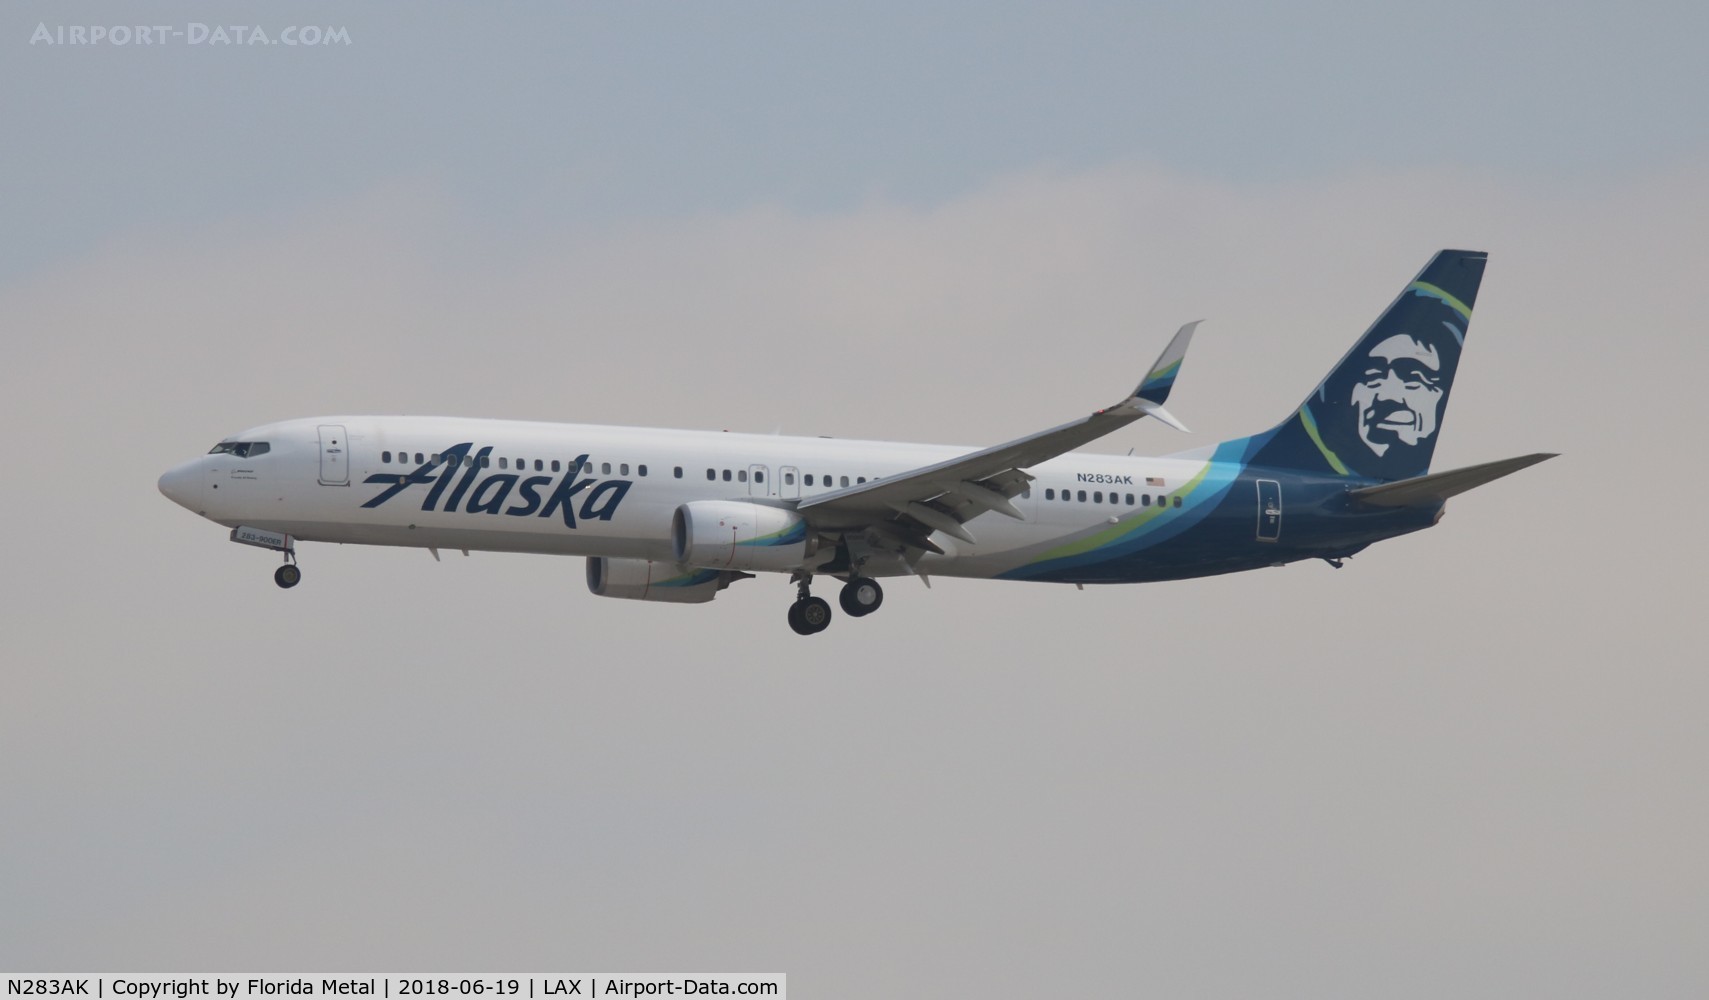 N283AK, 2017 Boeing 737-990 C/N 36358, Alaska